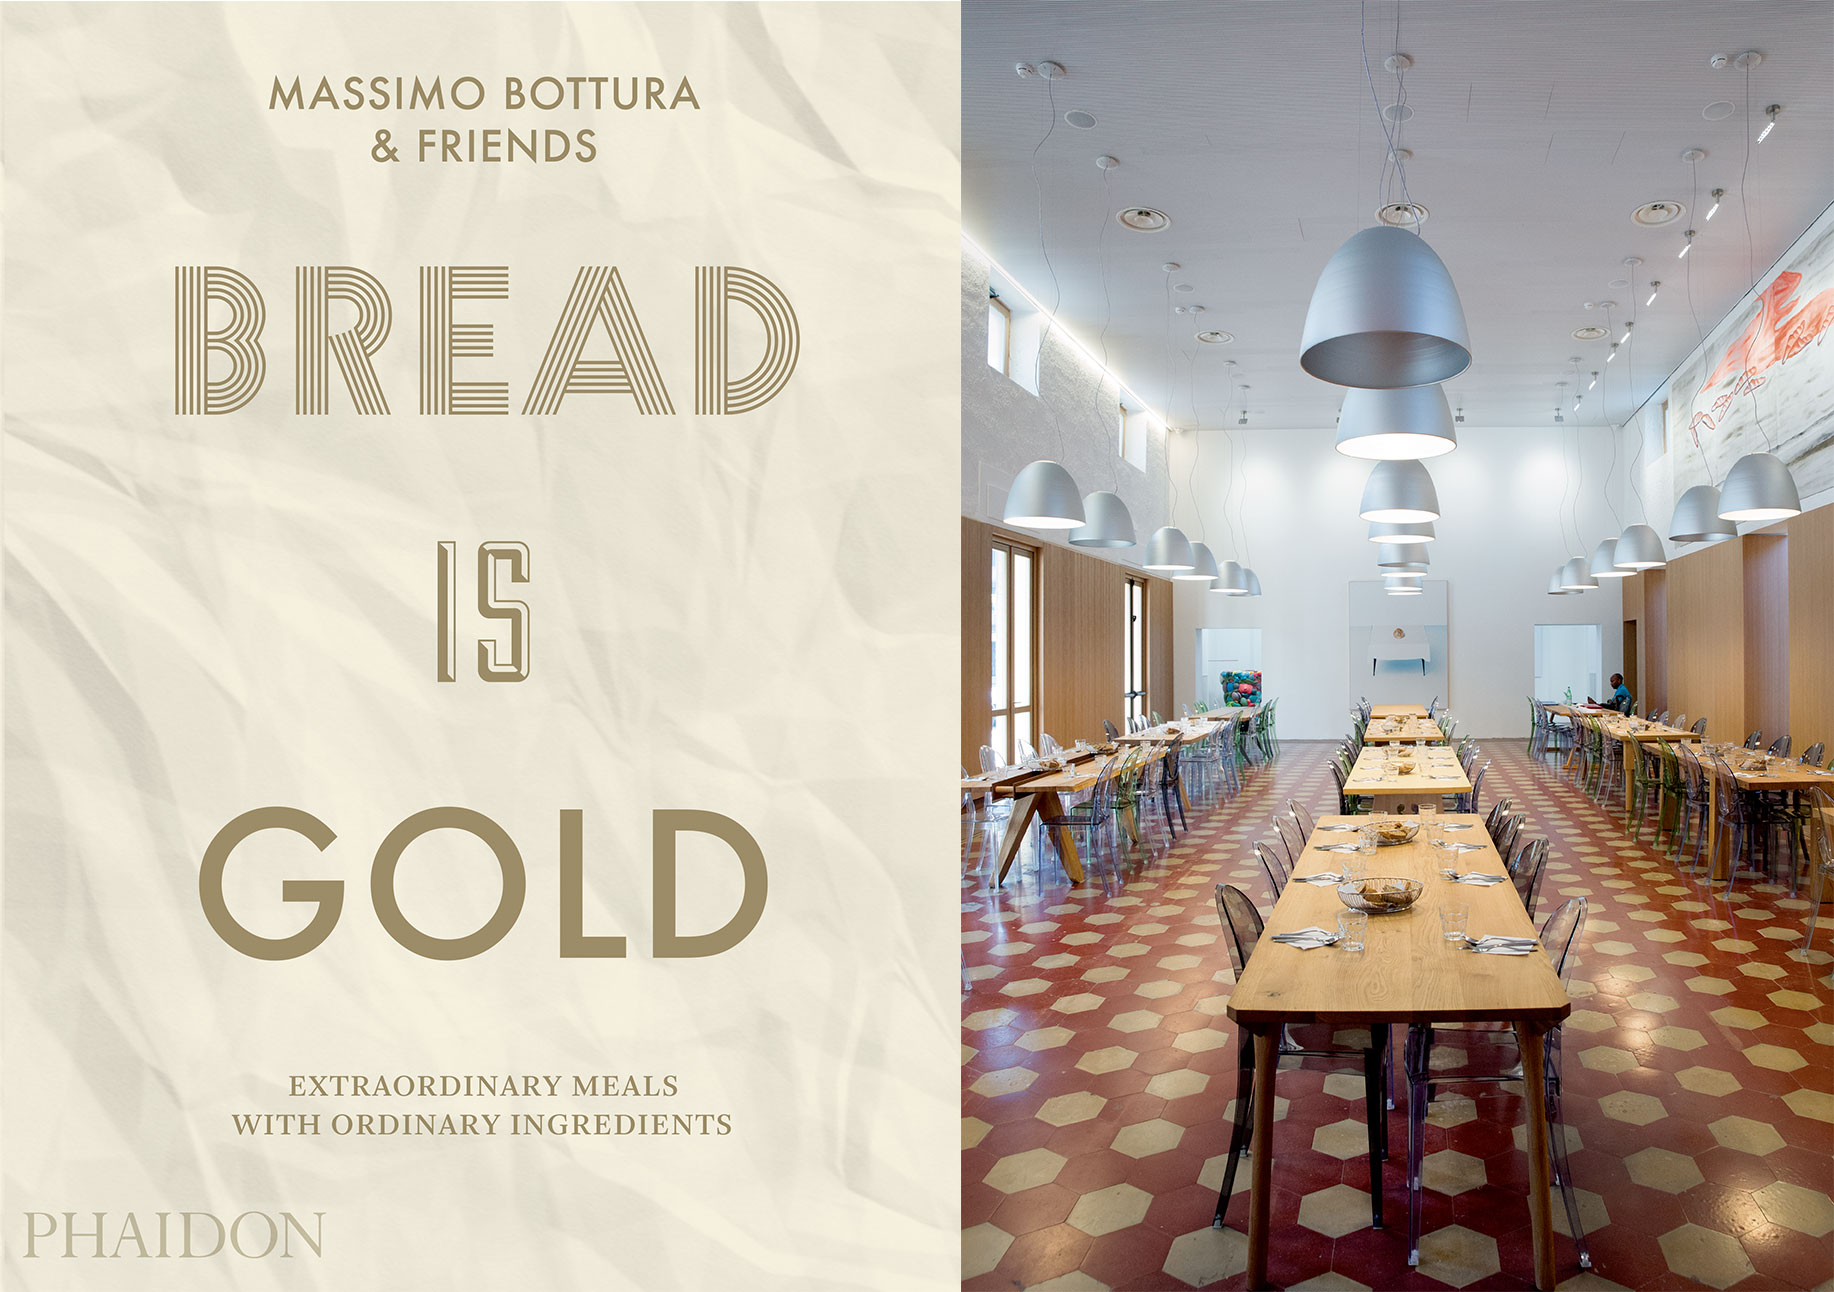 Bread is Gold, and Refettorio Ambrosiano